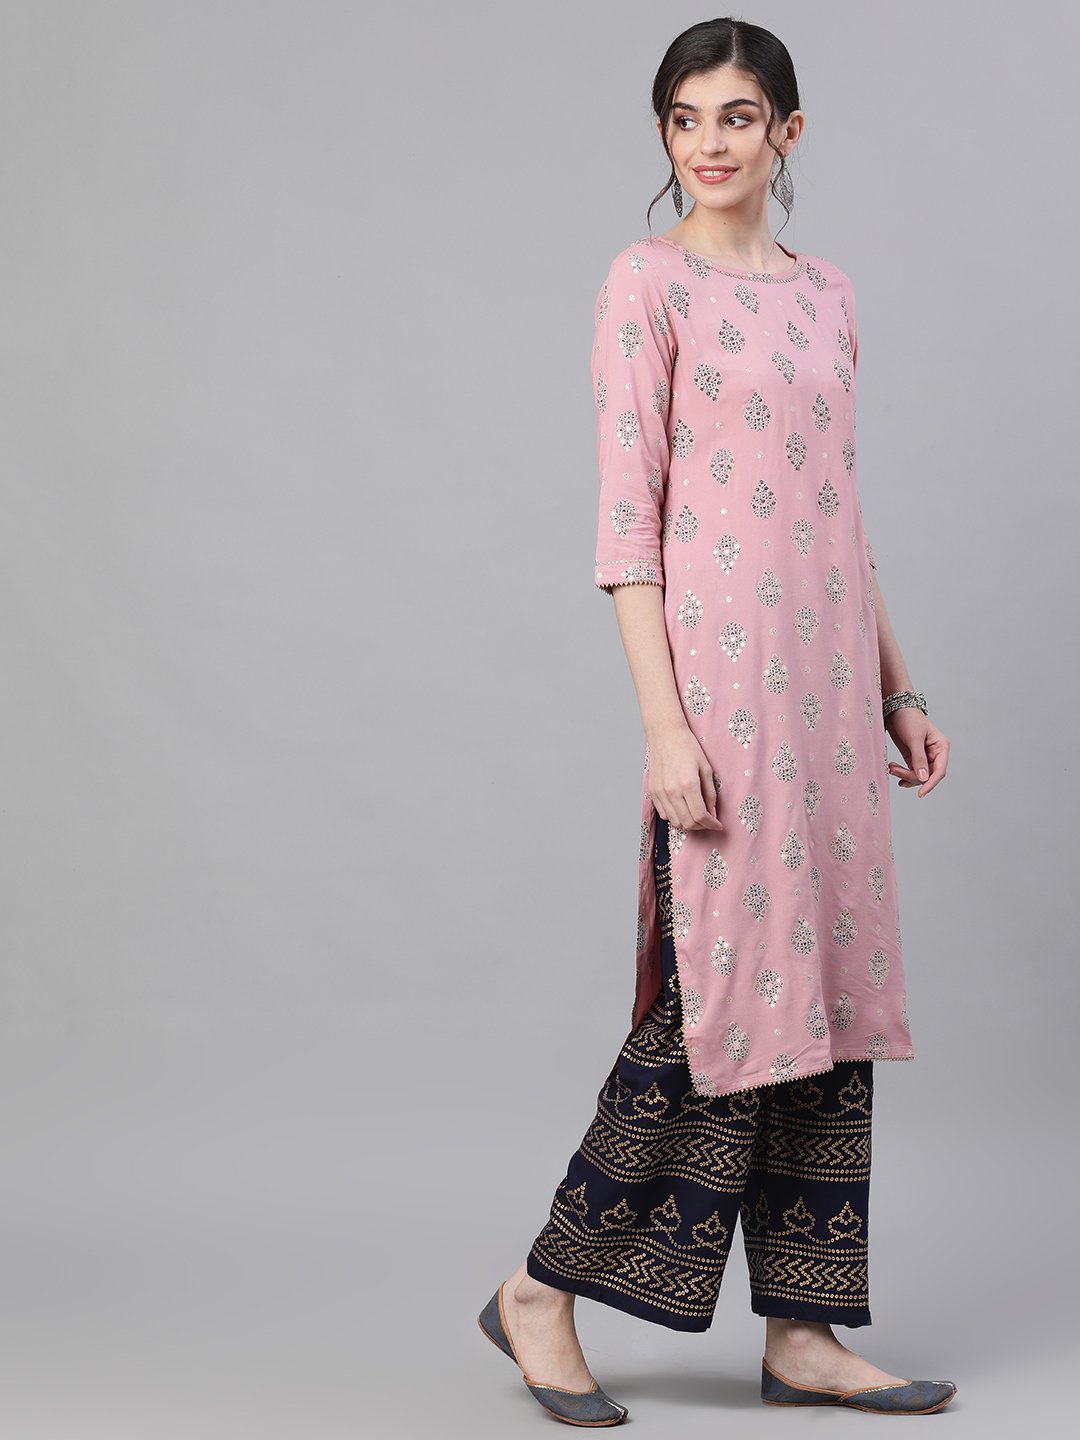 Ishin Women's Rayon Pink & Blue Foil Printed Straight Kurta Palazzo Set